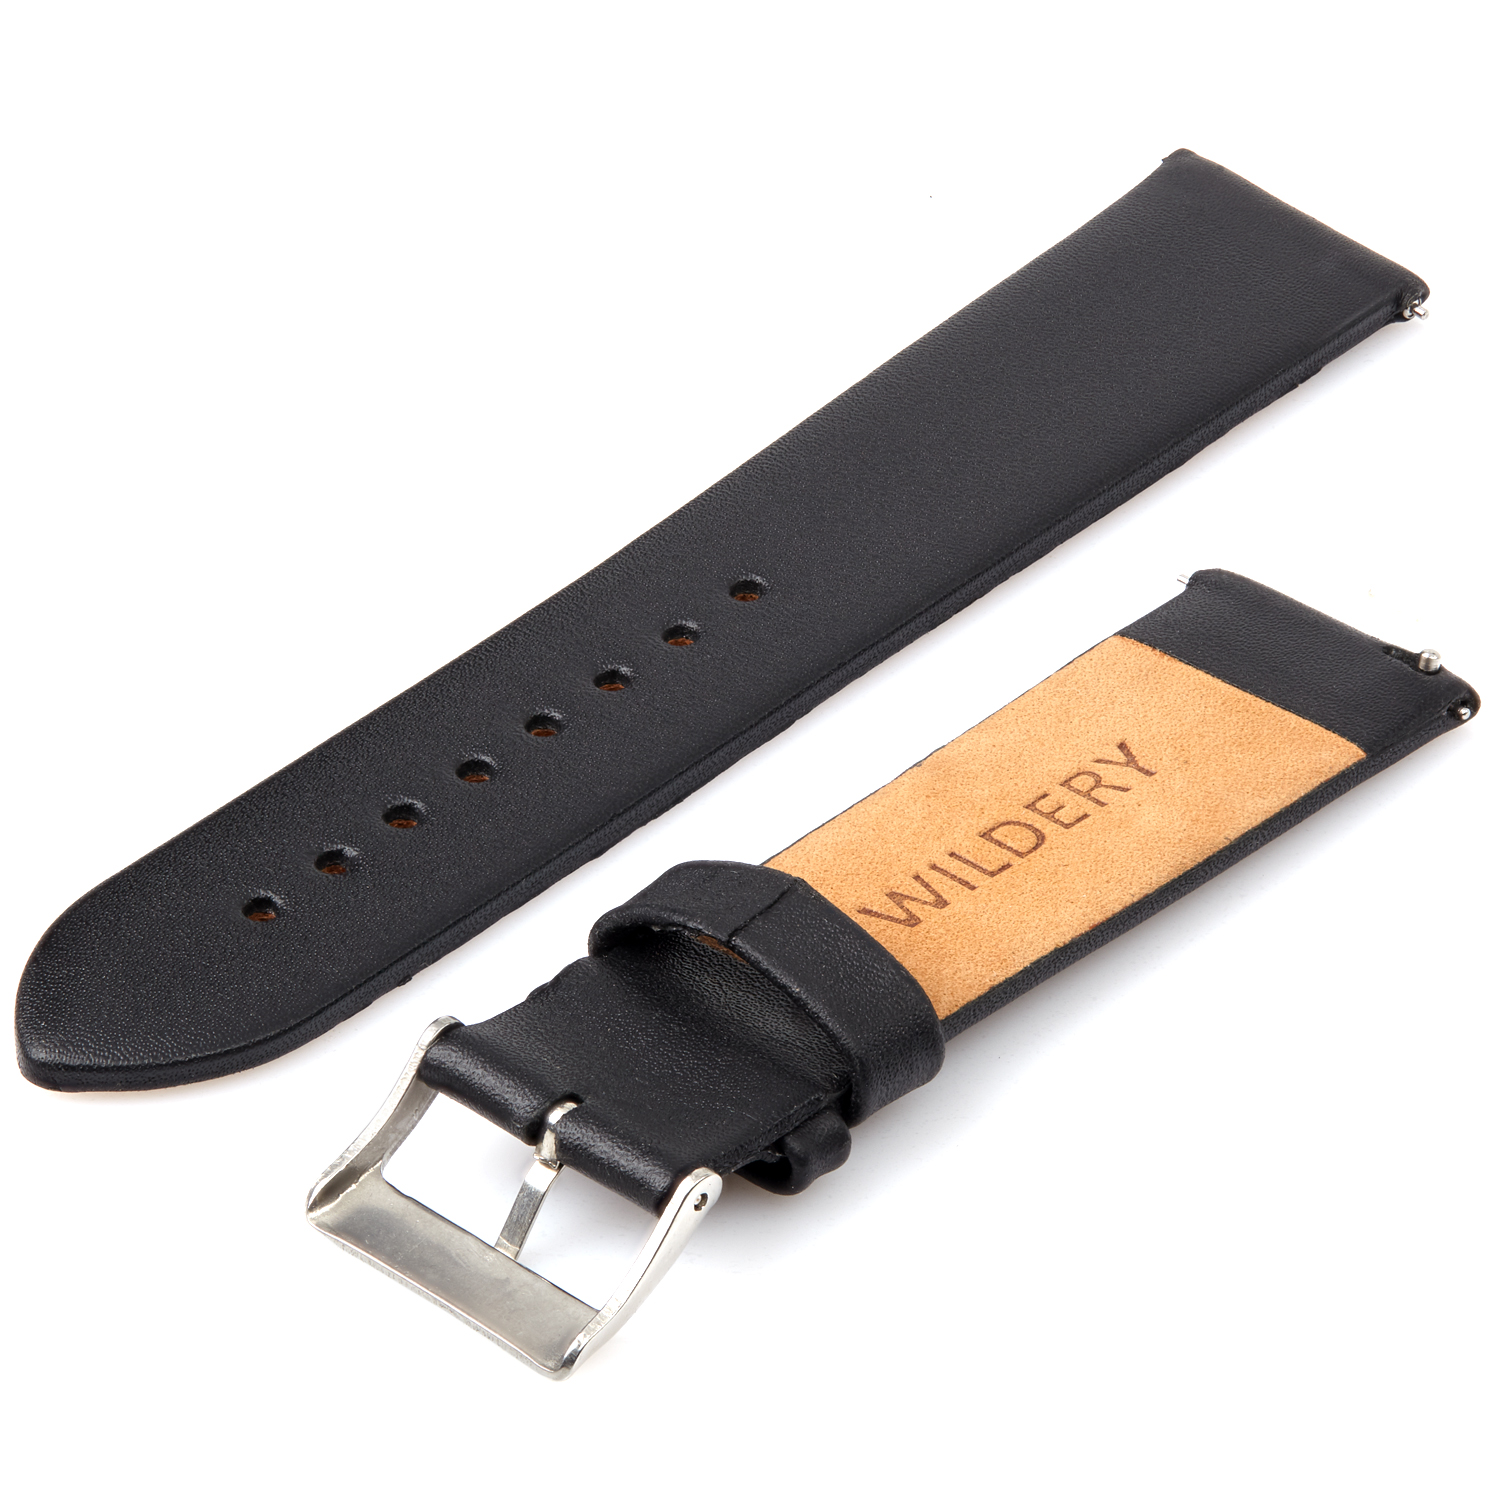 Wildery echt Leder Armband für Samsung Gear S2/S3, Galaxy Watch 42mm, 46mm und Active 1/2 in schwarz